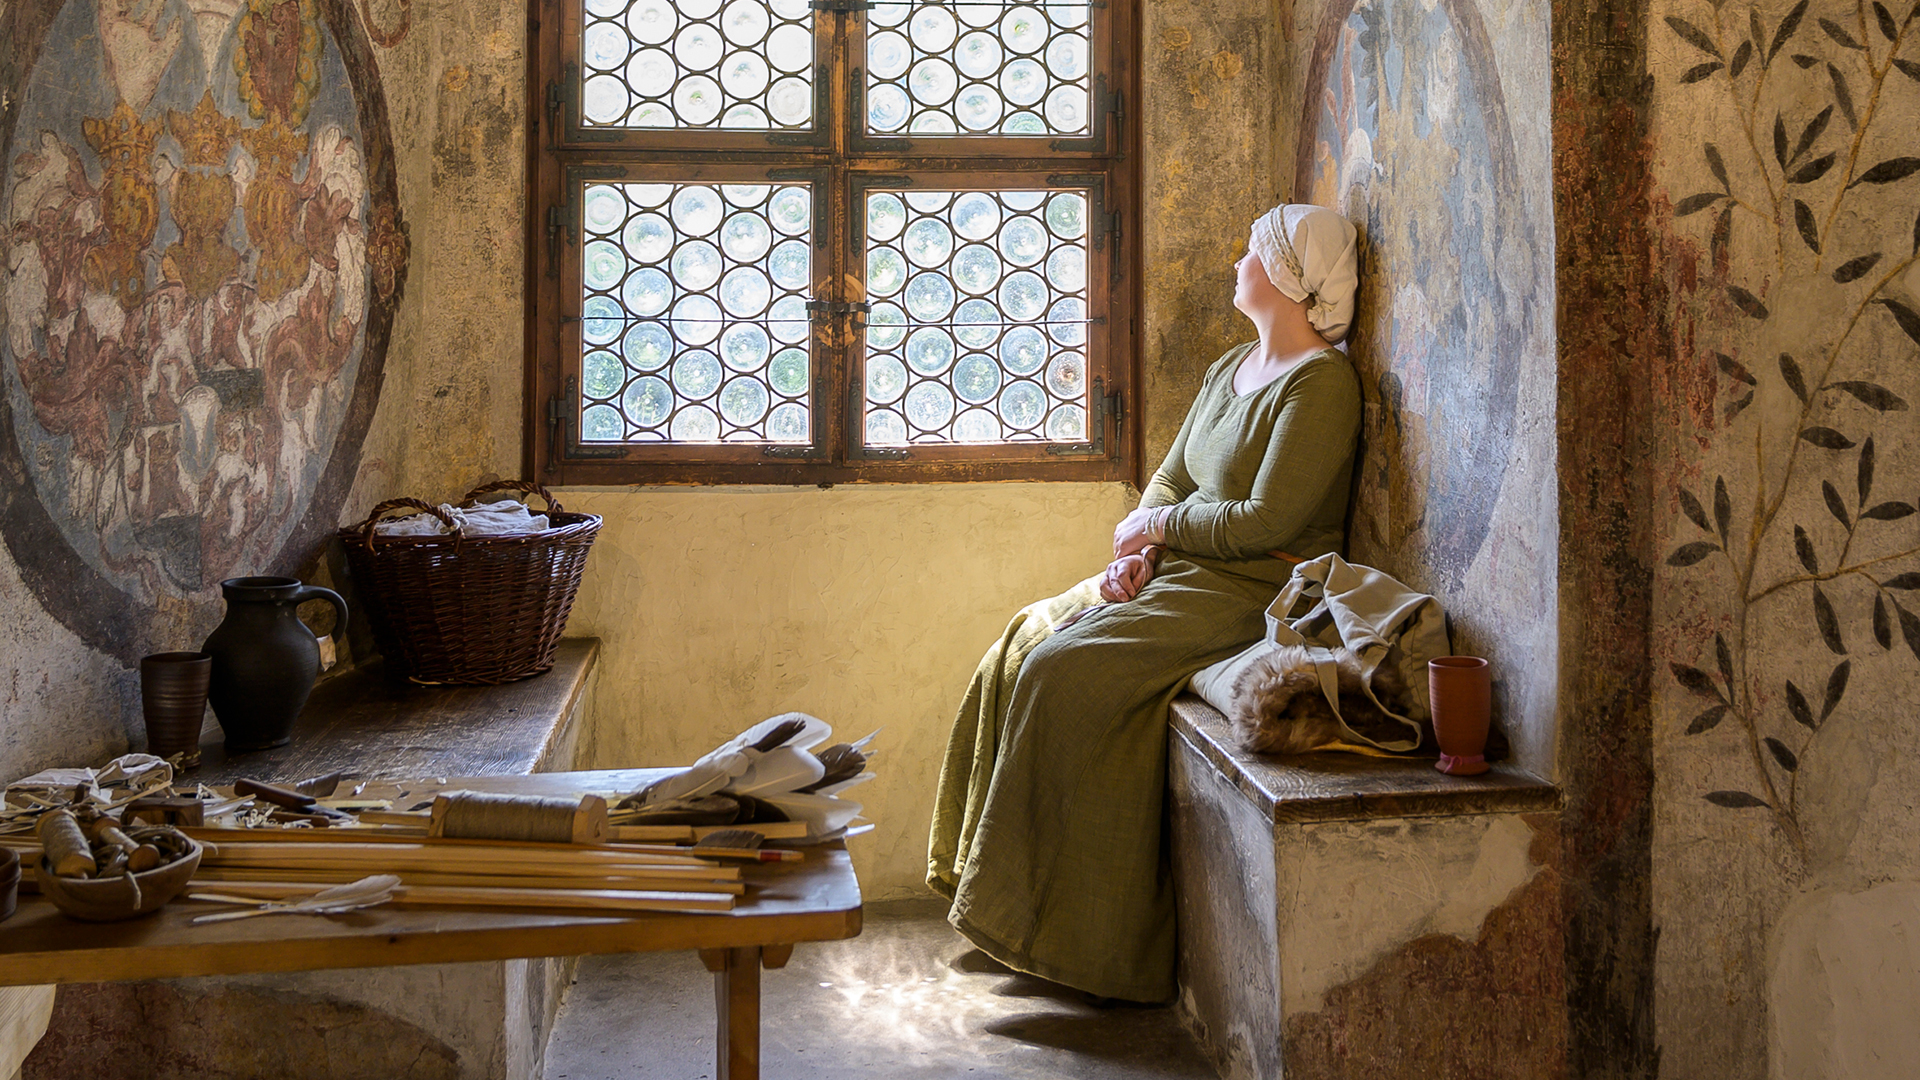 Una donna, vestita in modo tradizionale, è seduta su una panca di legno all'interno di una vecchia stanza e guarda al di fuori della finestra. Davanti a lei ci sono degli attrezzi da lavoro domestico poggiati su un tavolo in legno. 